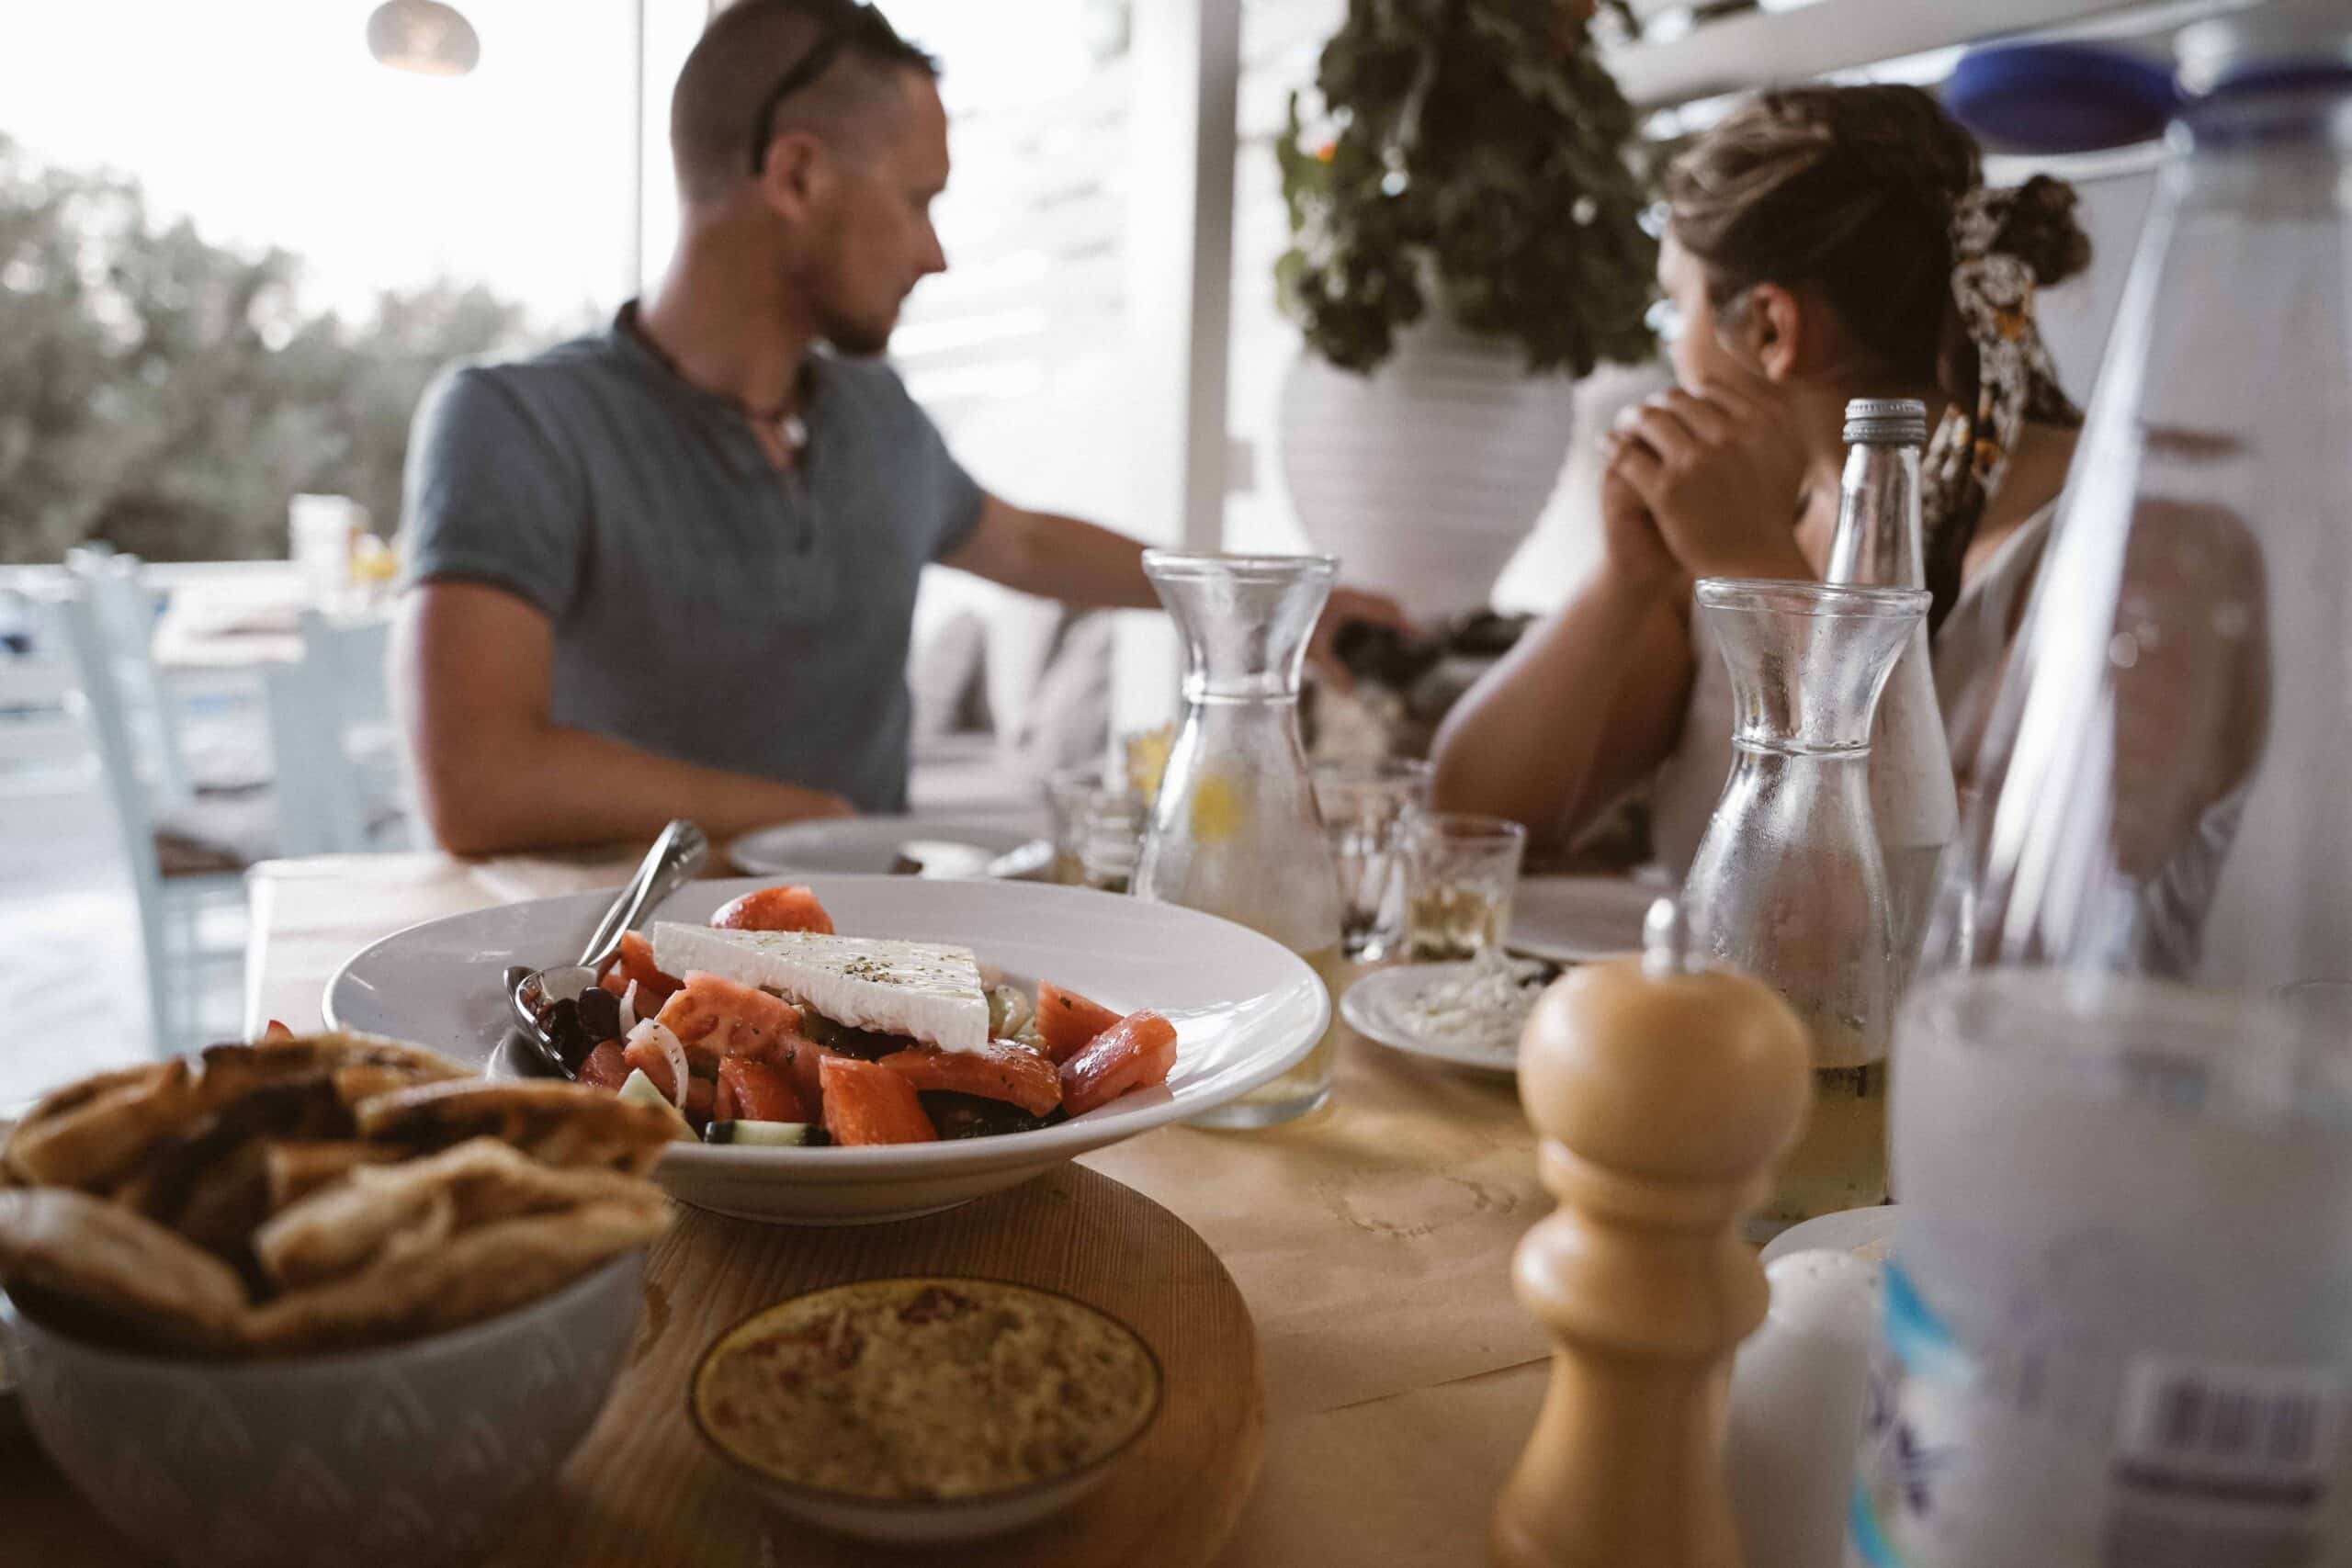 Zwei Personen sitzen an einem Tisch und genießen nach einem Tag auf dem Segelboot eine Mahlzeit. Der Tisch ist mit verschiedenen Gerichten gedeckt, darunter geschnittene Tomaten und Käse, eine kleine Schüssel Hummus und ein Korb Brot. Eine Flasche Wasser und eine Pfeffermühle stehen ebenfalls auf dem Tisch. Der Hintergrund ist unscharf.